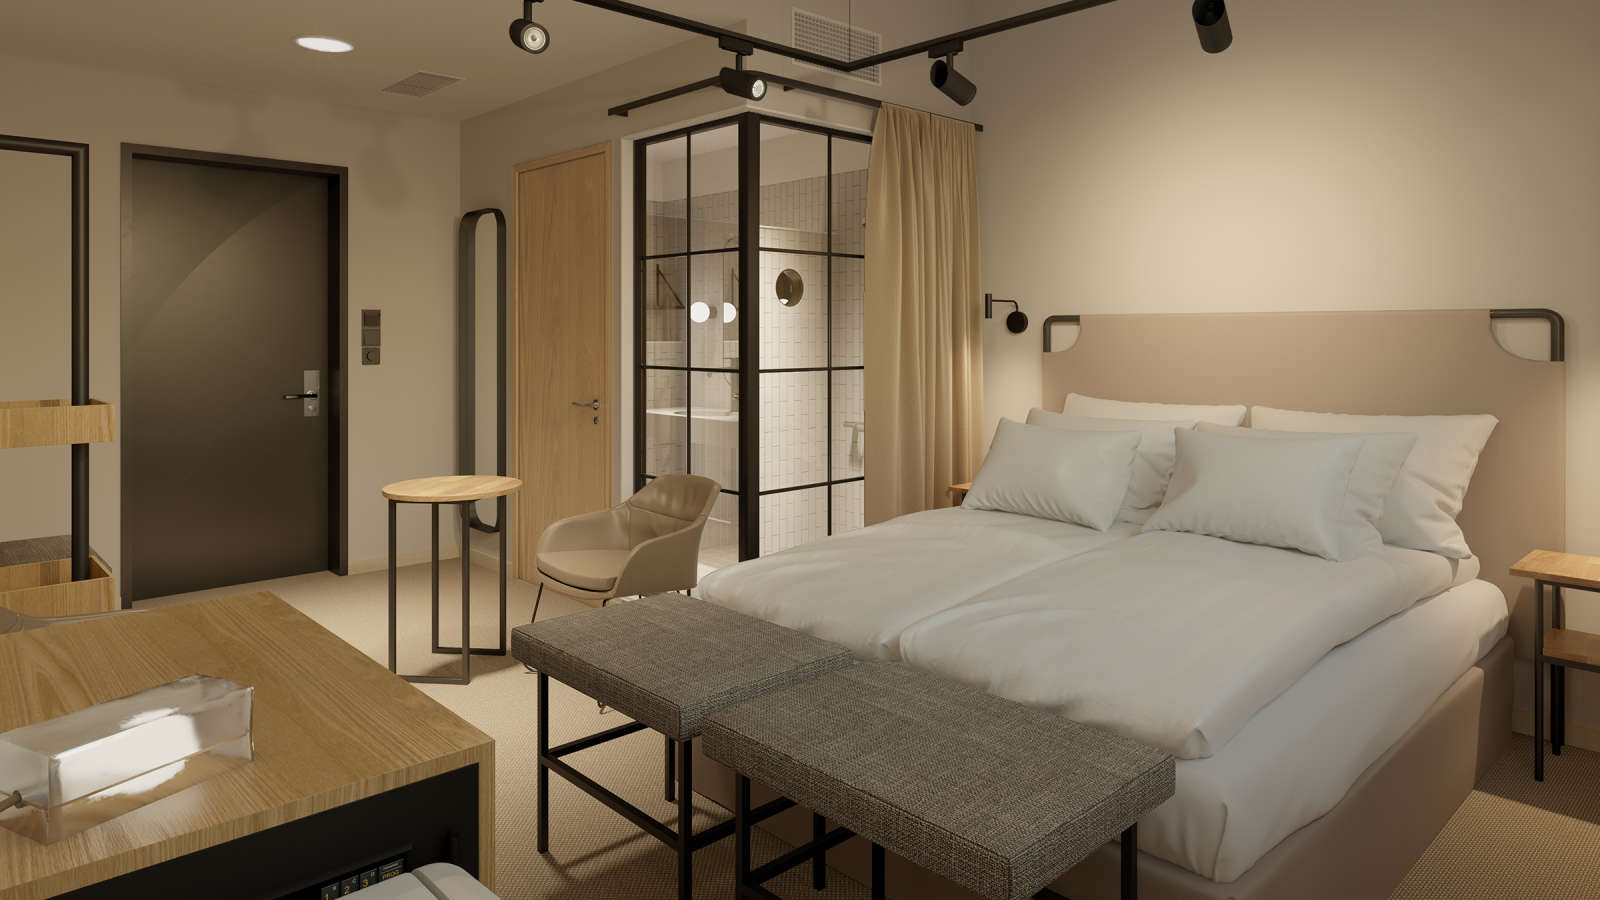 Original Sokos Hotel Wiklundin huoneet ovat harmonisen rauhallisia